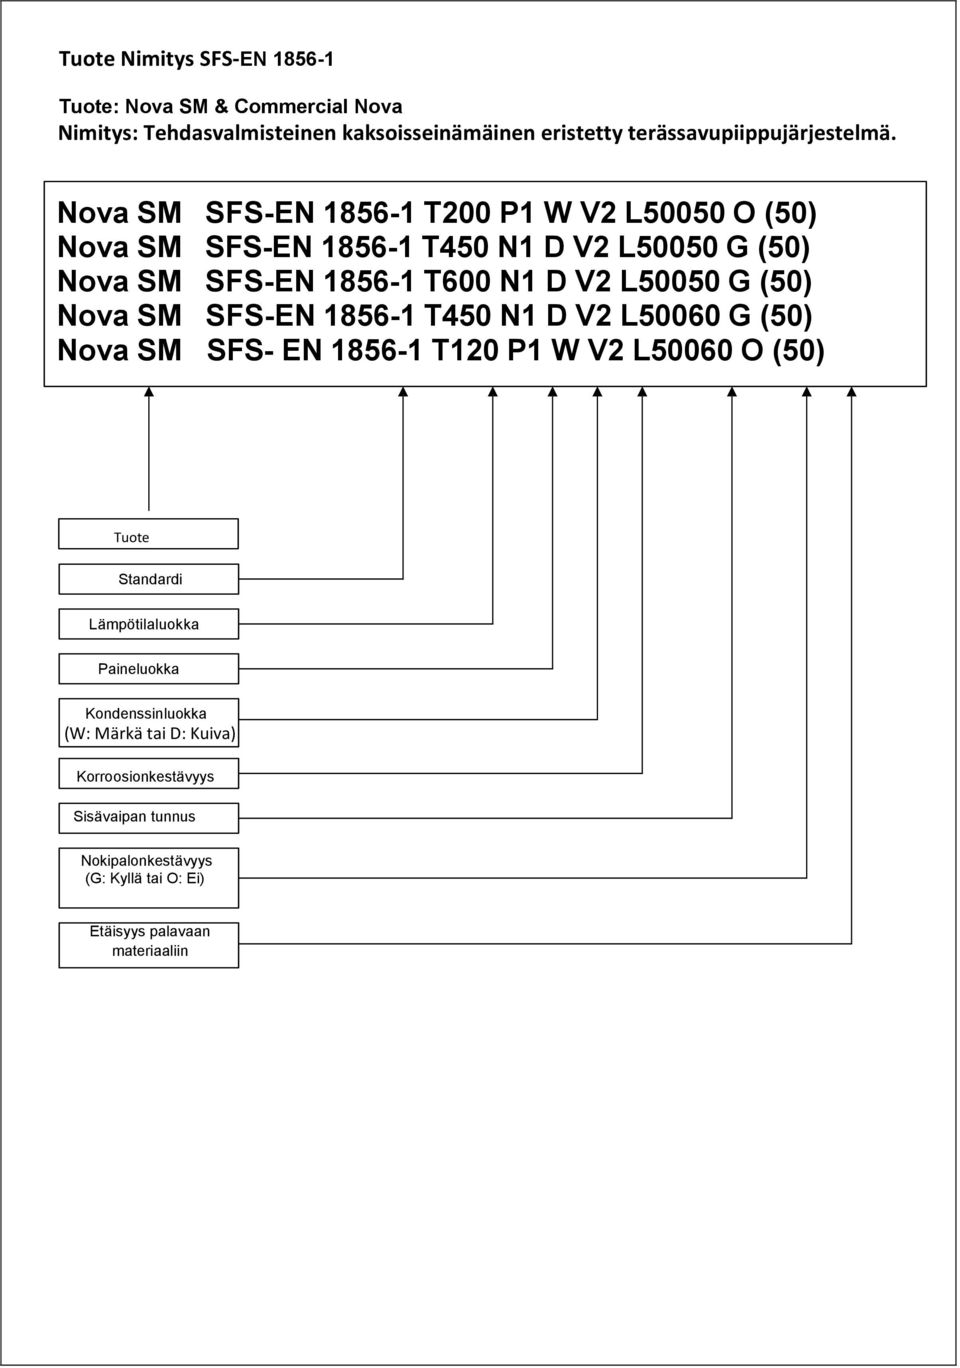 Nova SM SFS-EN 1856-1 T450 N1 D V2 L50060 G (50) Nova SM SFS- EN 1856-1 T120 P1 W V2 L50060 O (50) Tuote Standardi Lämpötilaluokka Paineluokka